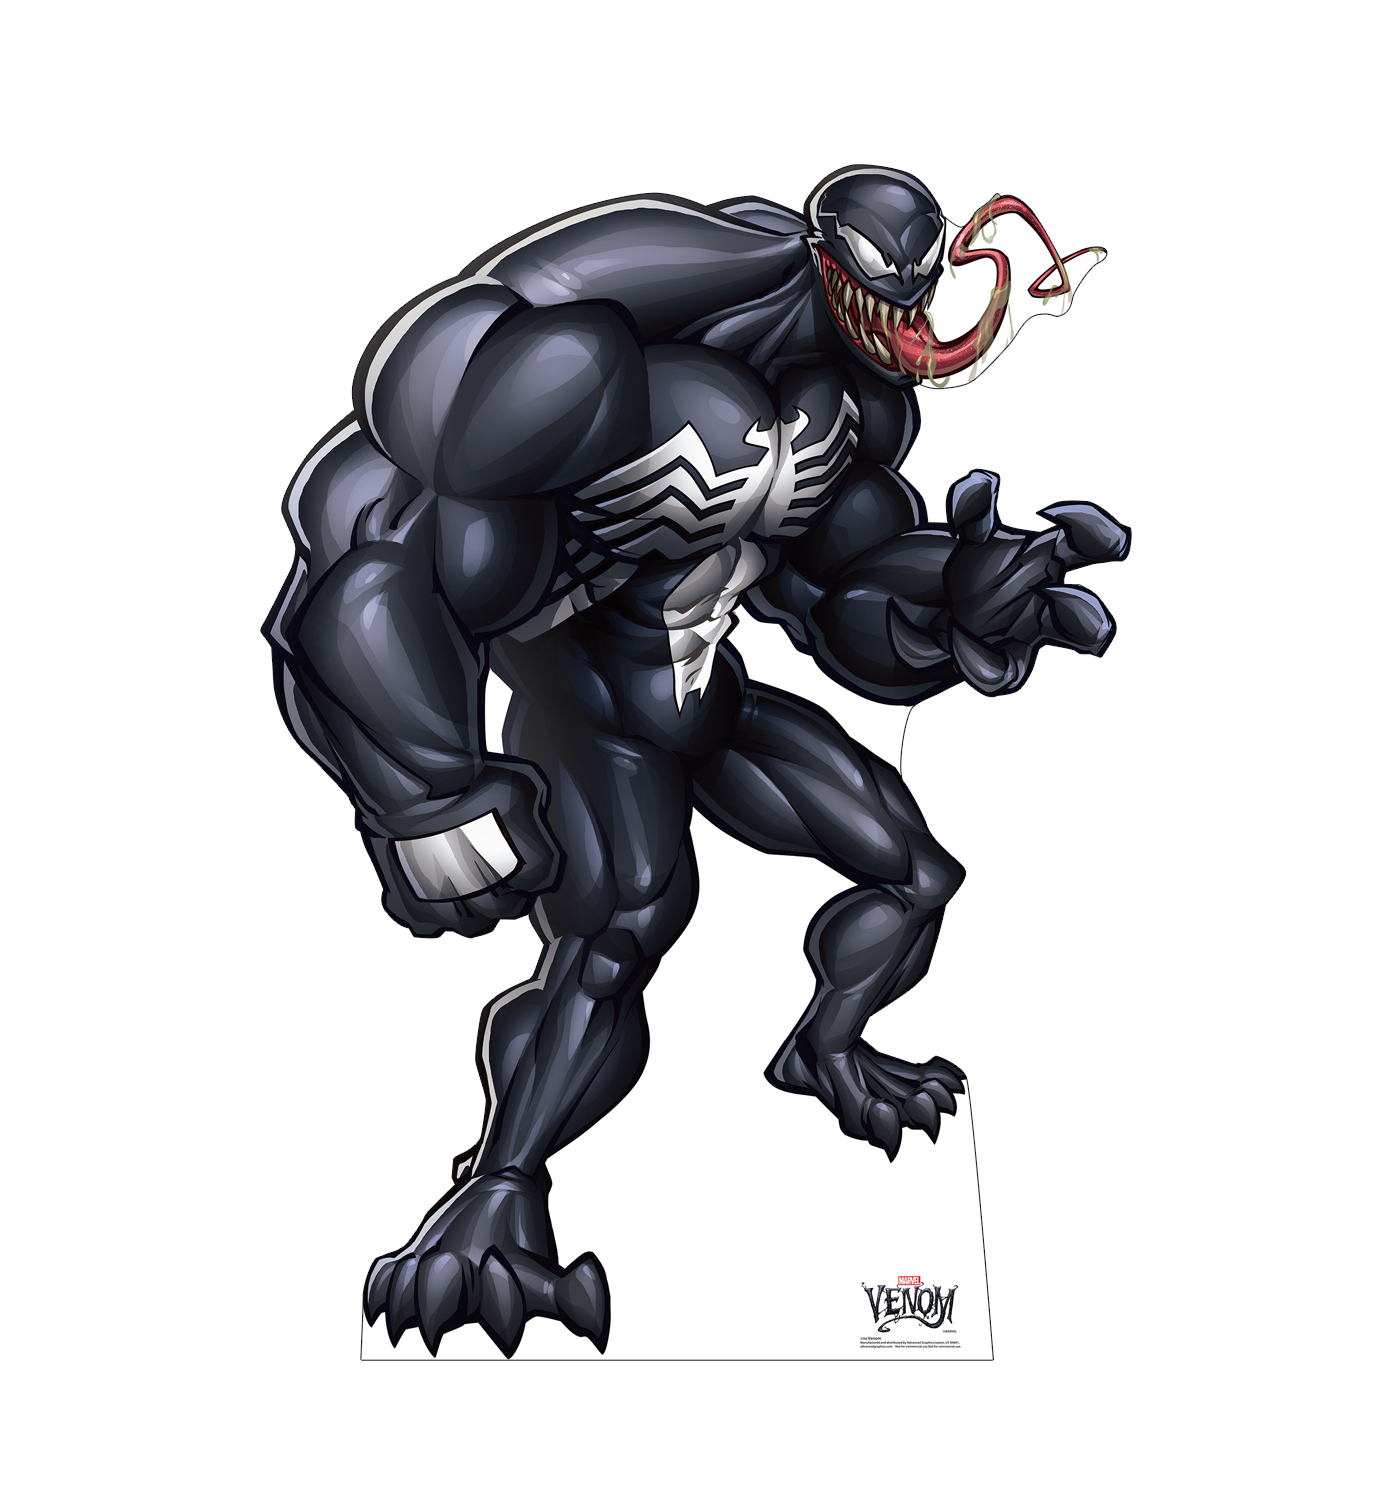 Marvels Venom ClassicCardboard Cutouts